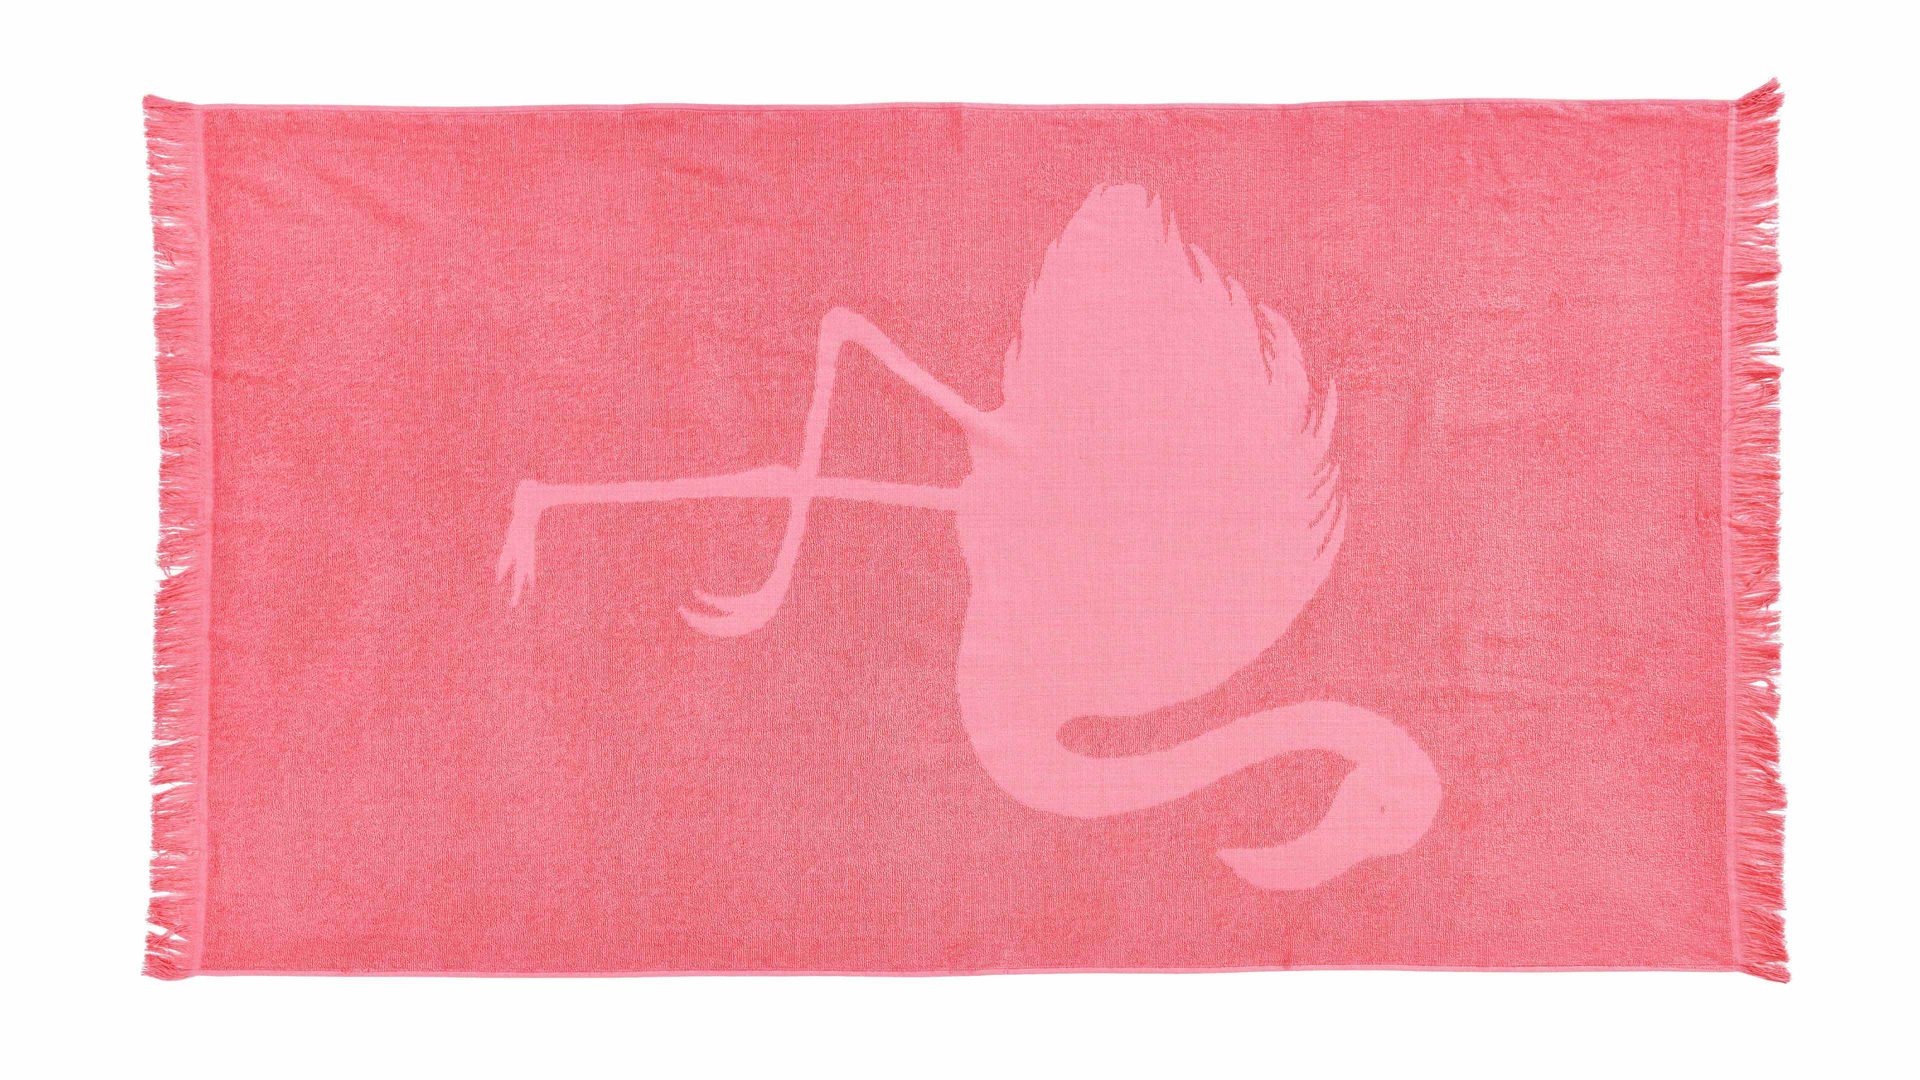 Hamamtuch Done.® aus Stoff in Pink done.® Hamamtuch Capri pinke Baumwolle – Flamingo-Motiv